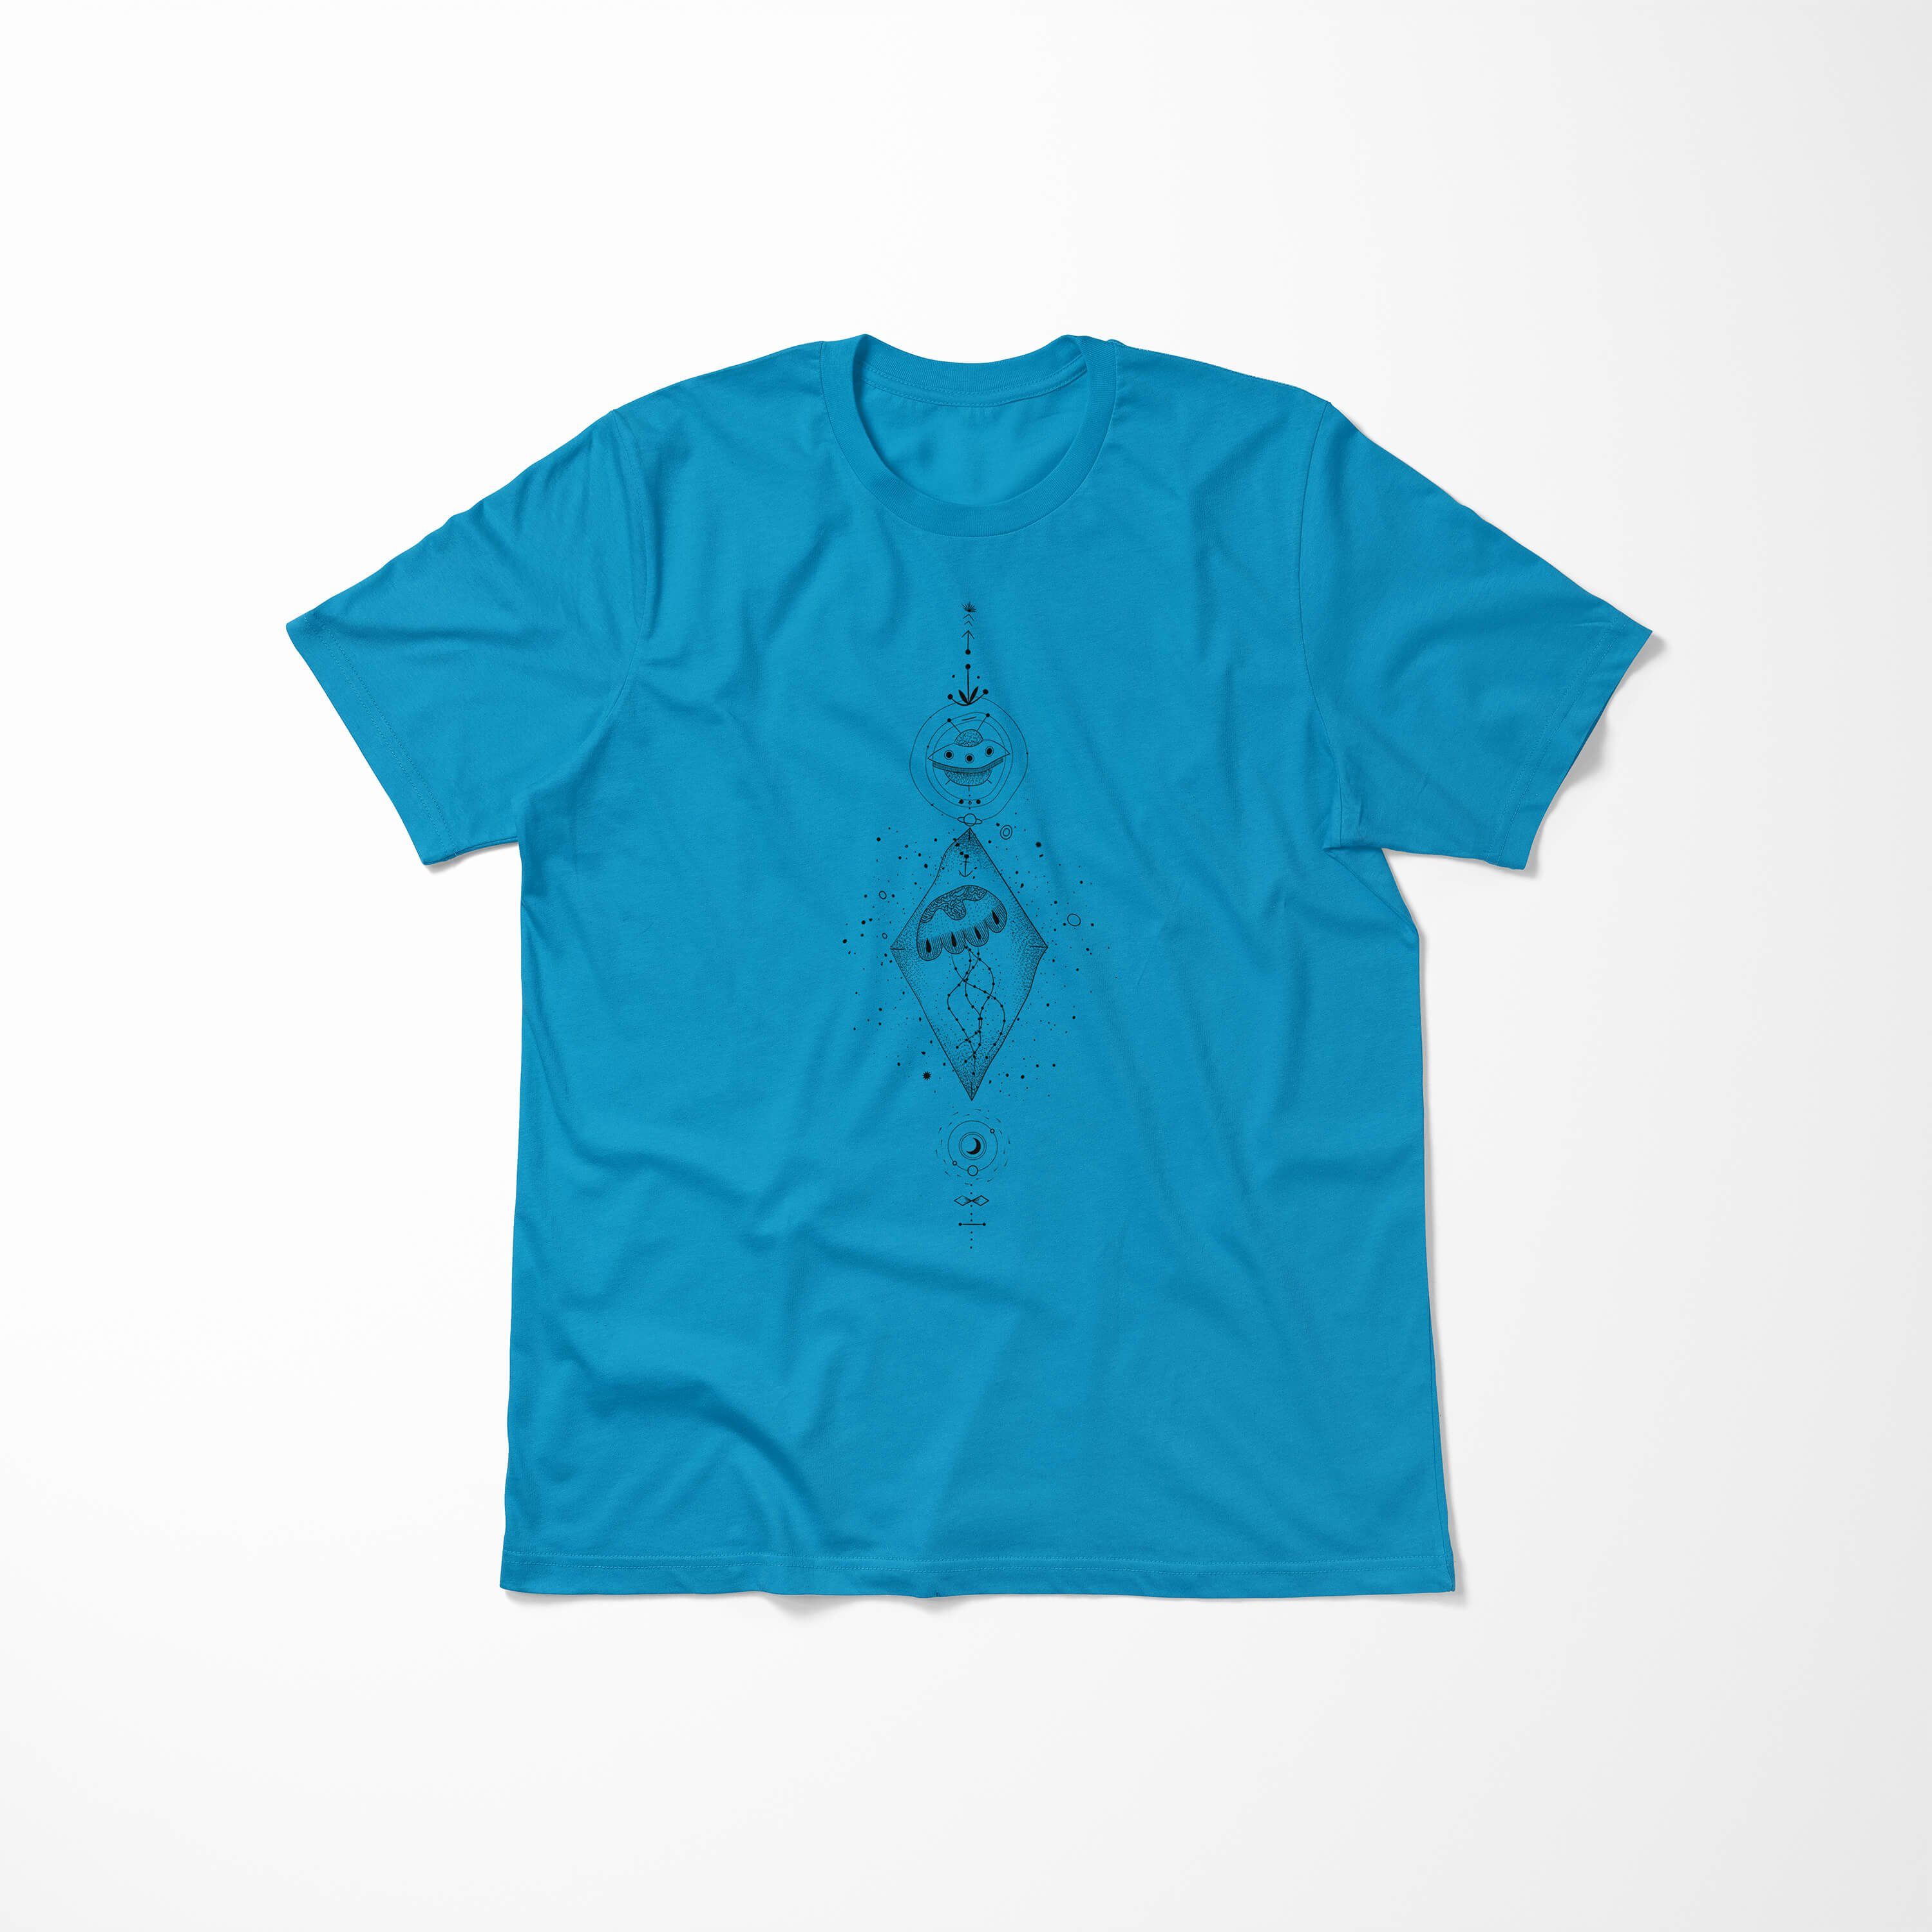 Sinus Serie Art Alchemy angenehmer T-Shirt Premium No.0059 Symbole T-Shirt Tragekomfort feine Struktur Atoll